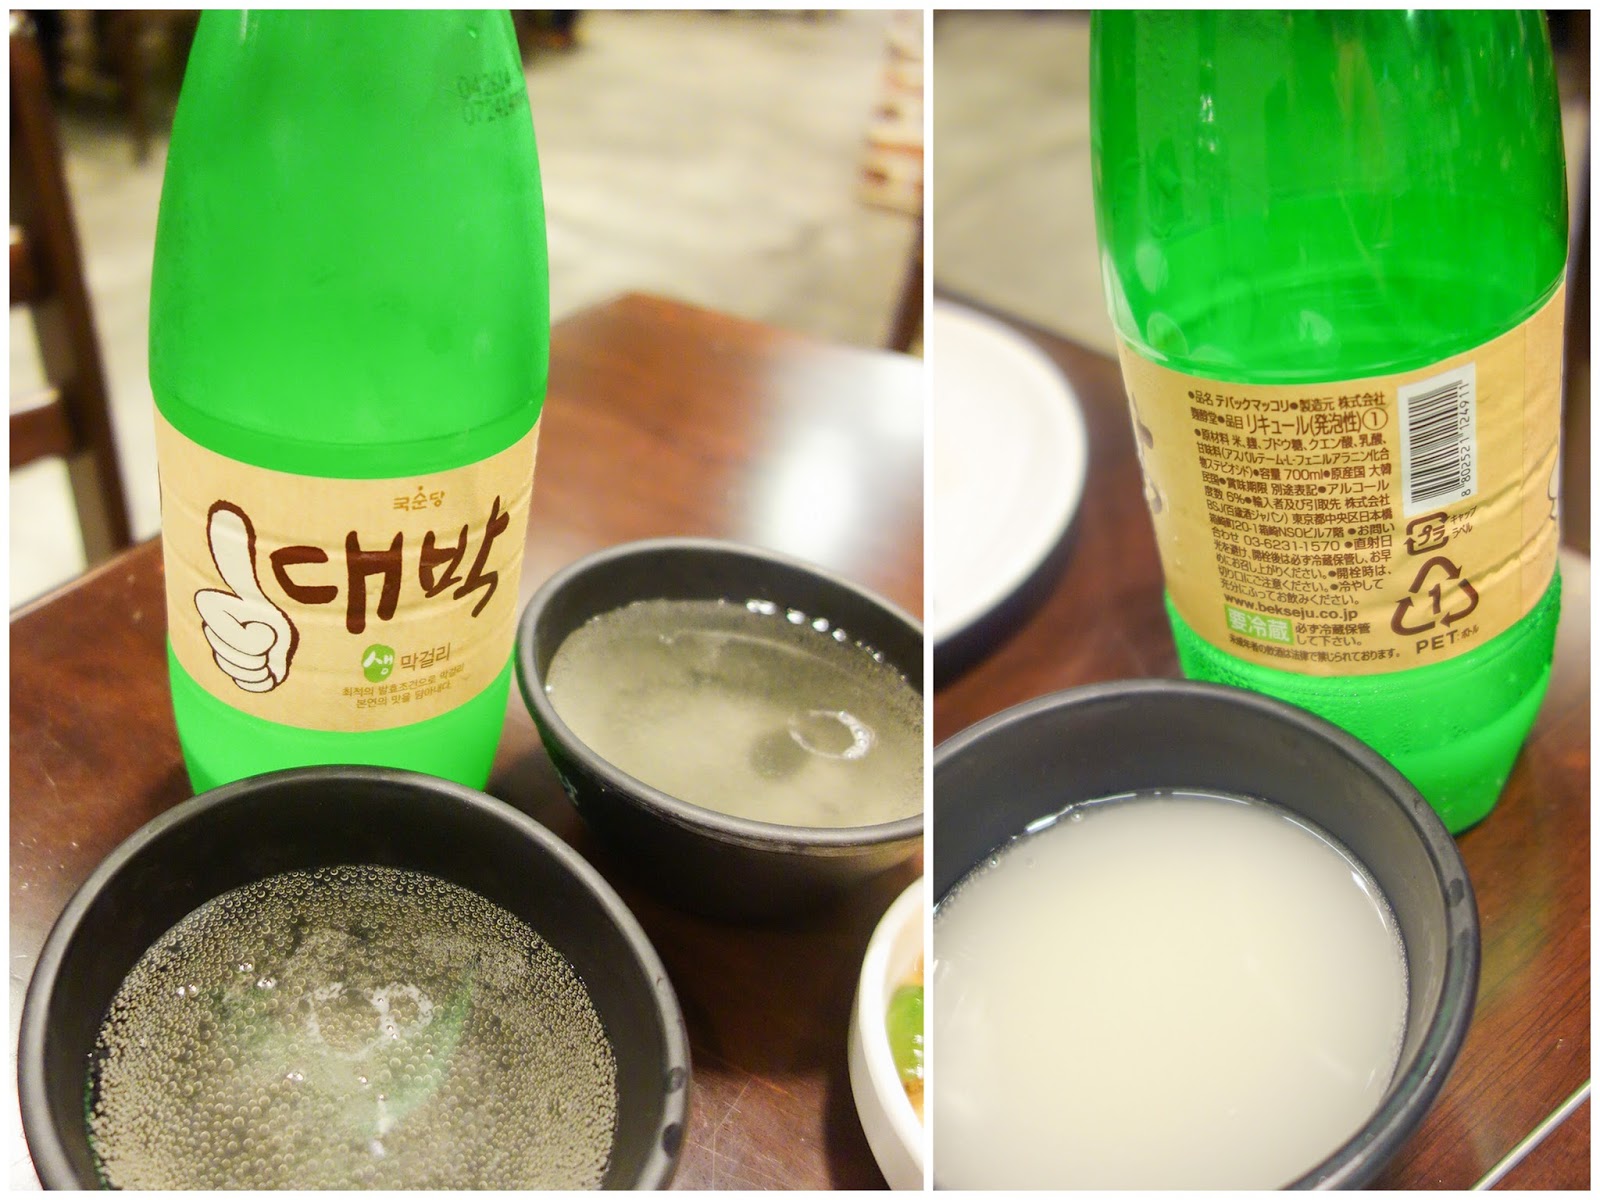 6. Hwang Hae drinks